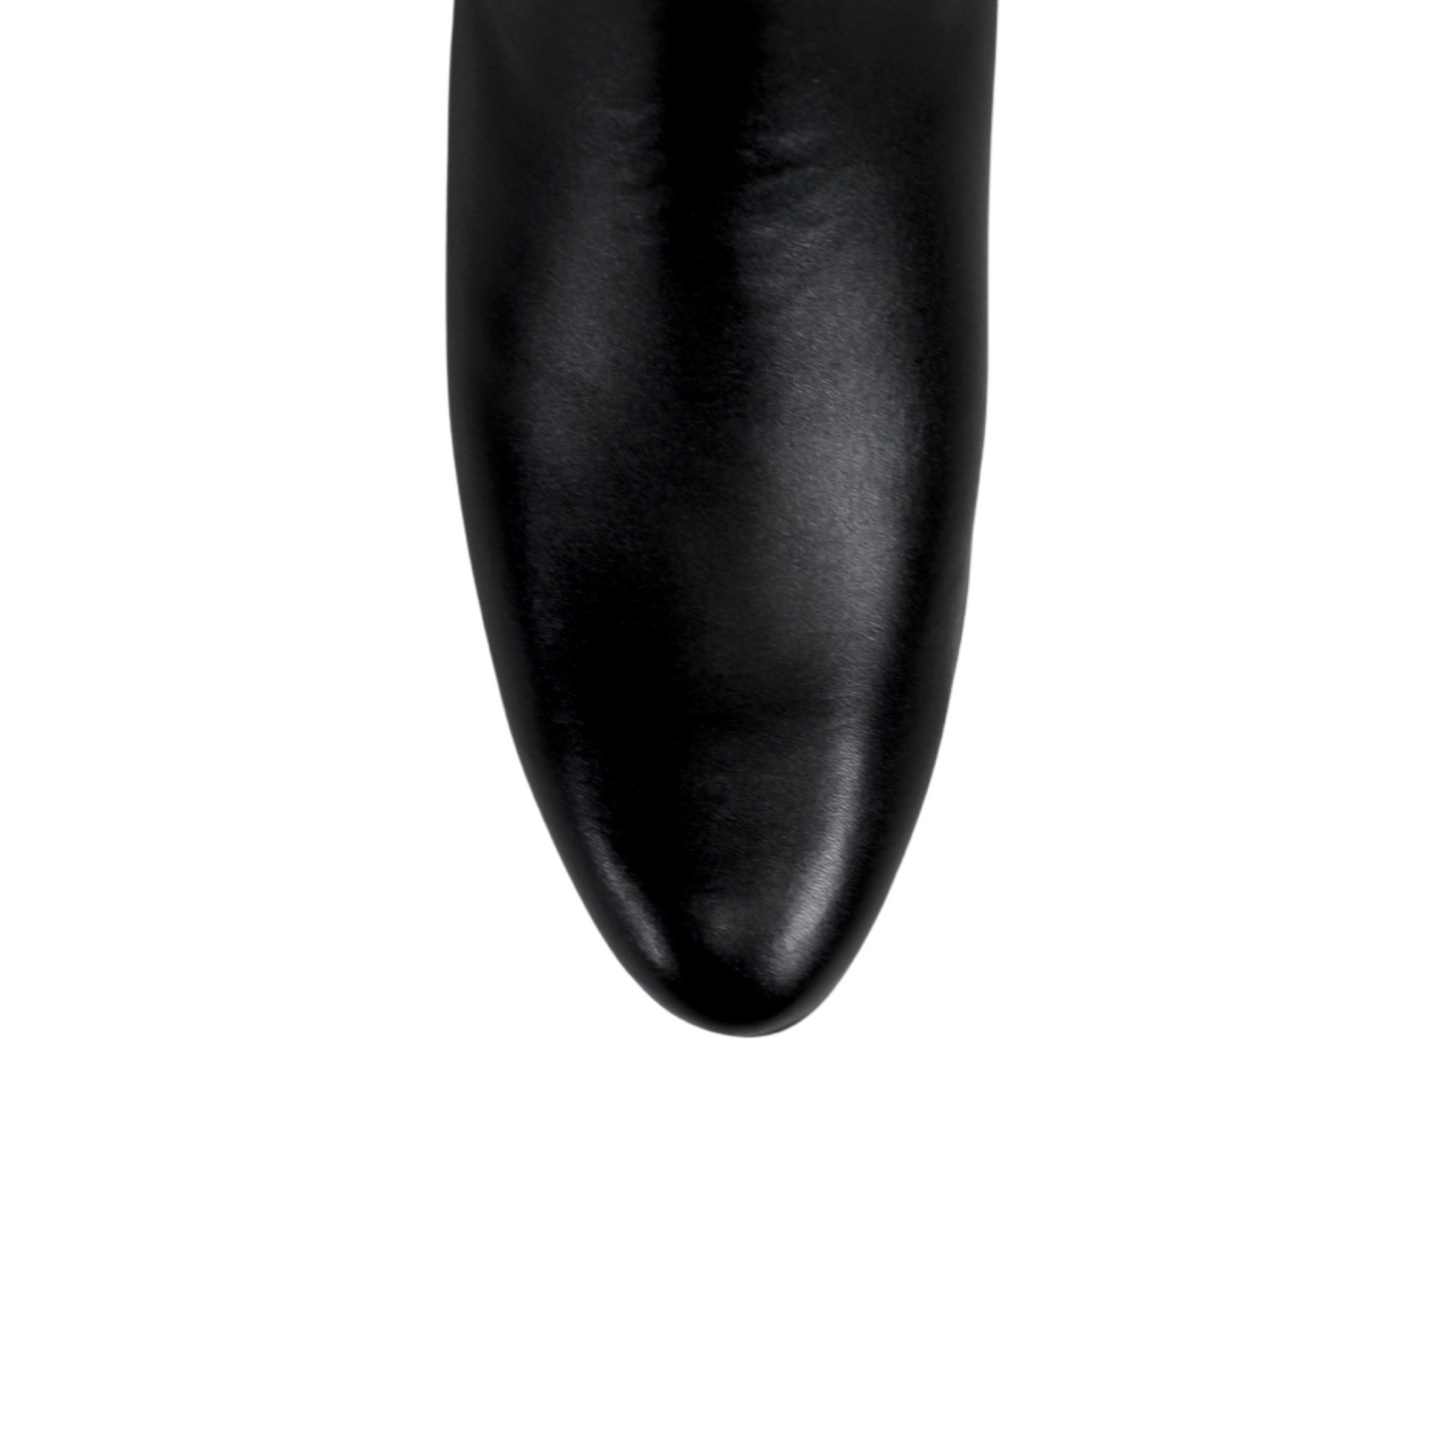 Botin Potrillo Style: 01 Leather